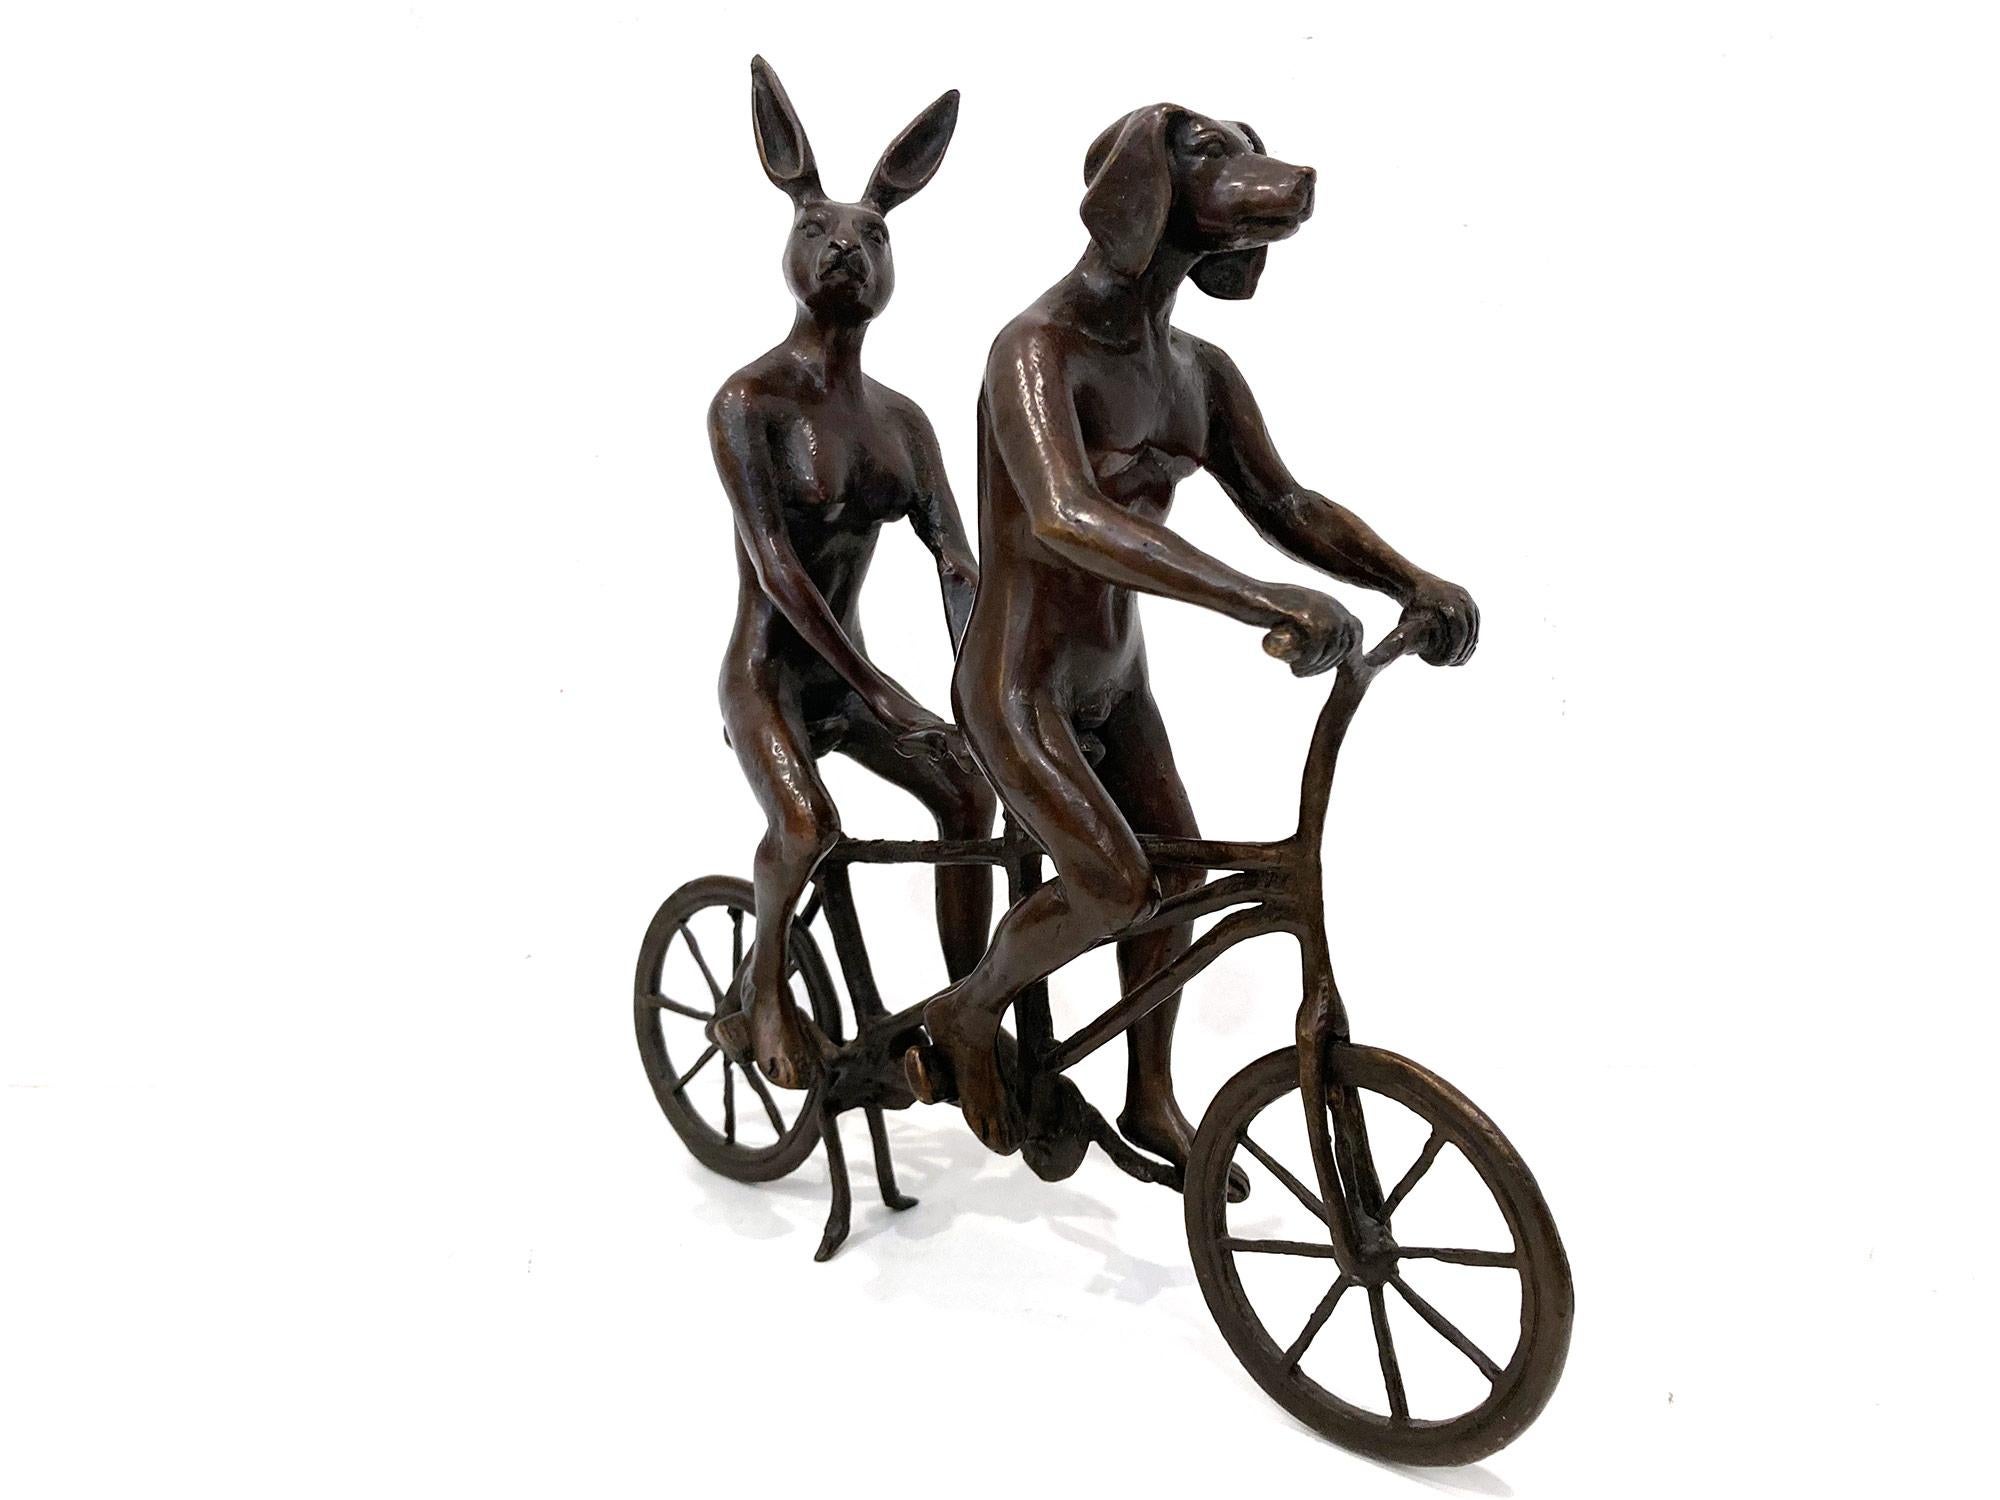 Ein skurriles und doch sehr starkes Werk, das das Kaninchen und den Weim aus Gillie and Marcs ikonischen Figuren des Hund-Hasen-Mensch-Hybriden darstellt, die auf der ganzen Welt große Wertschätzung erfahren haben. Hier fahren diese beiden Personen